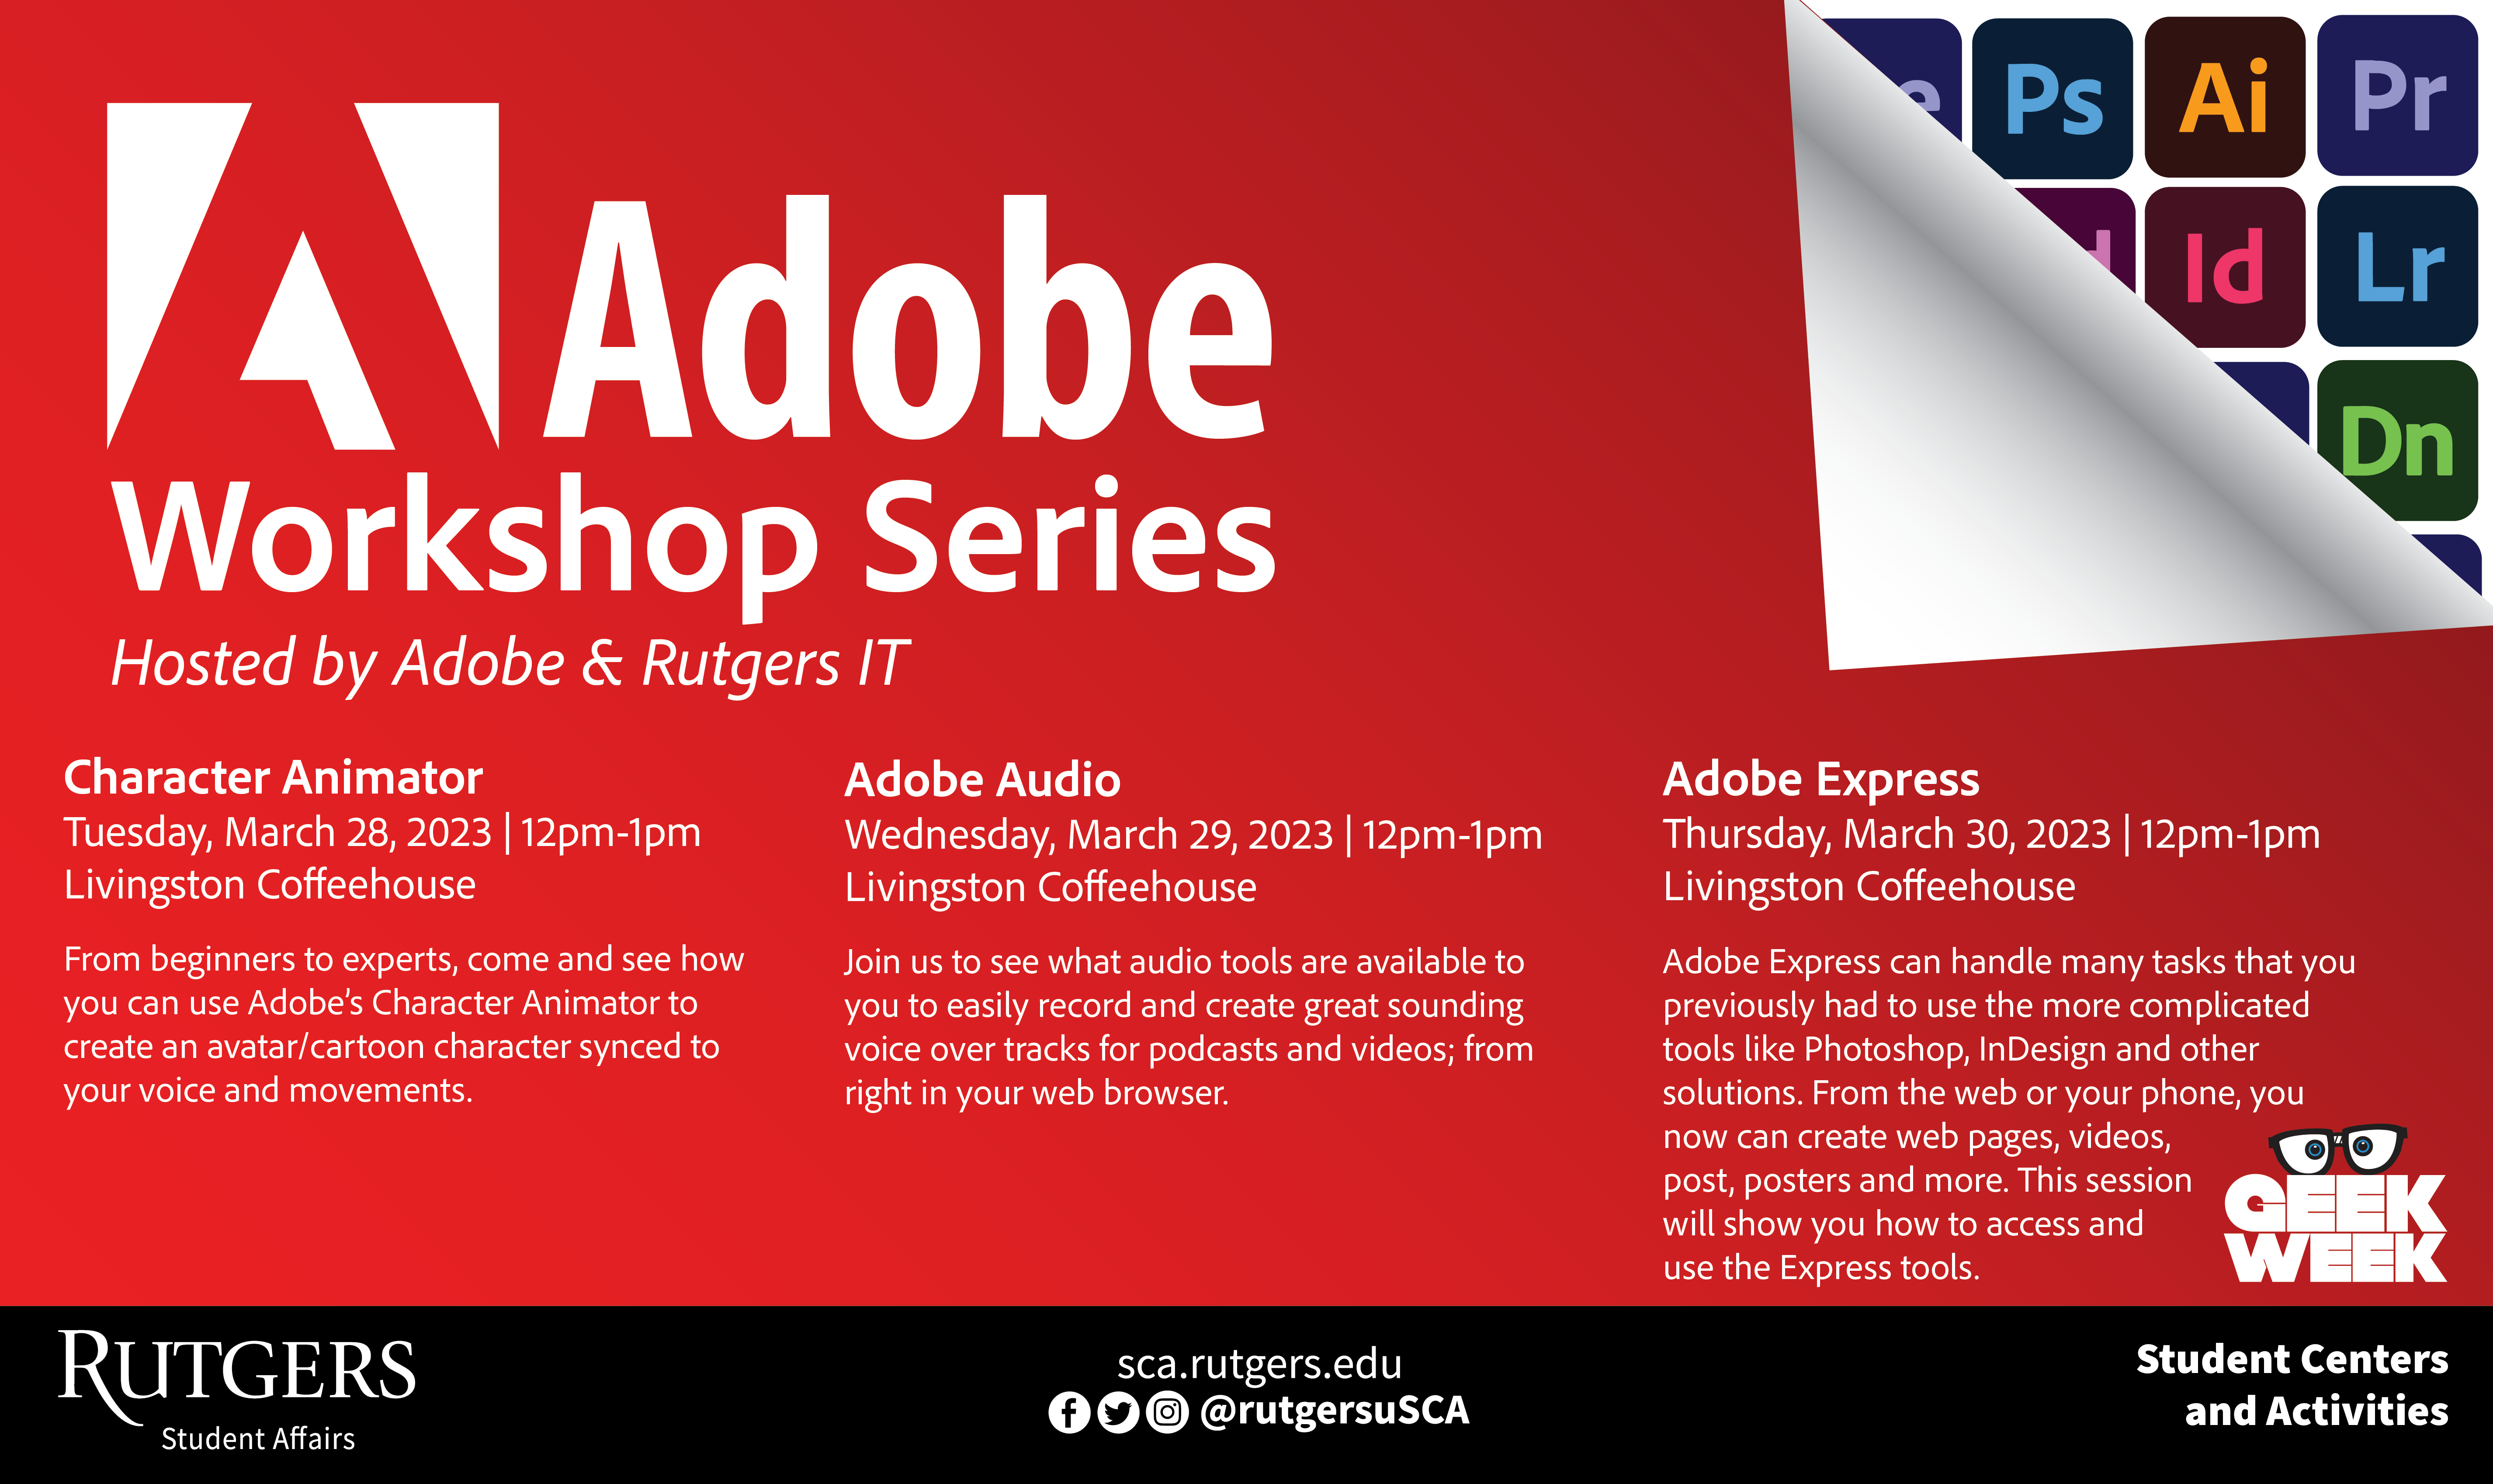 Adobe Workshop Series